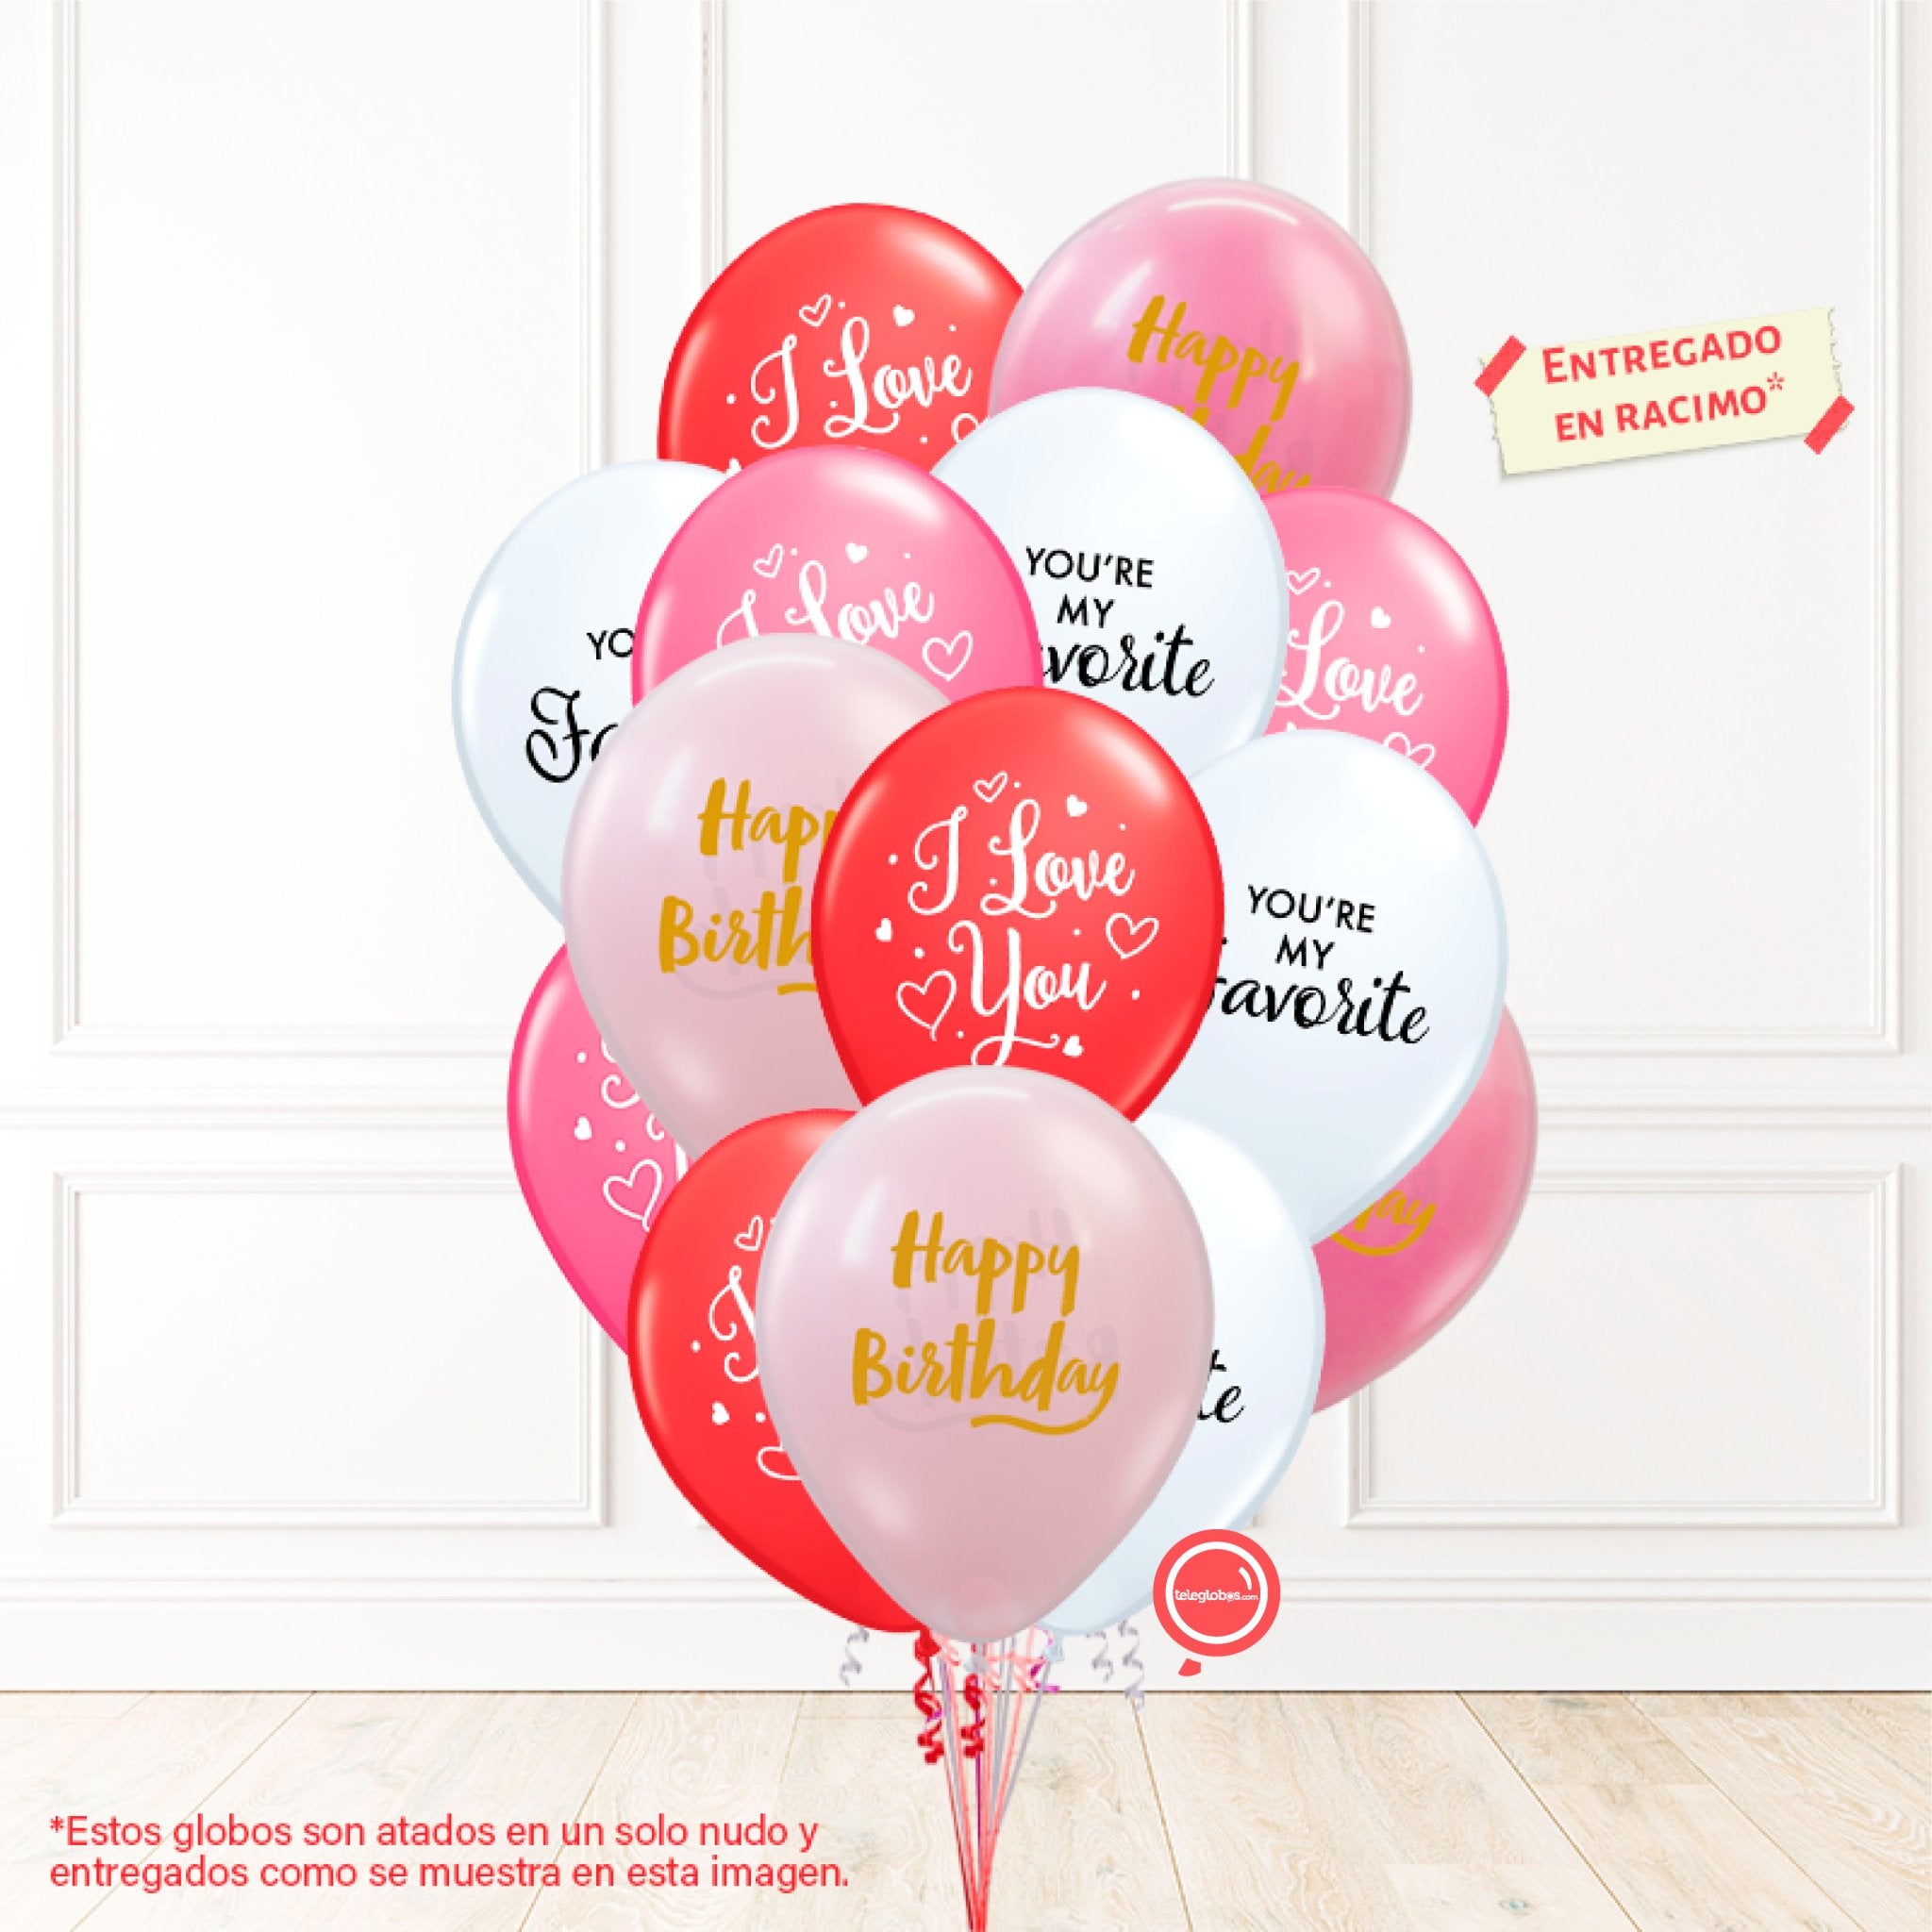 14 globos inflados con helio -I Love You/You're my Favorite/Happy Birthday- Bio* -RAC009- | Globos y Regalos Teleglobos.com.mx.